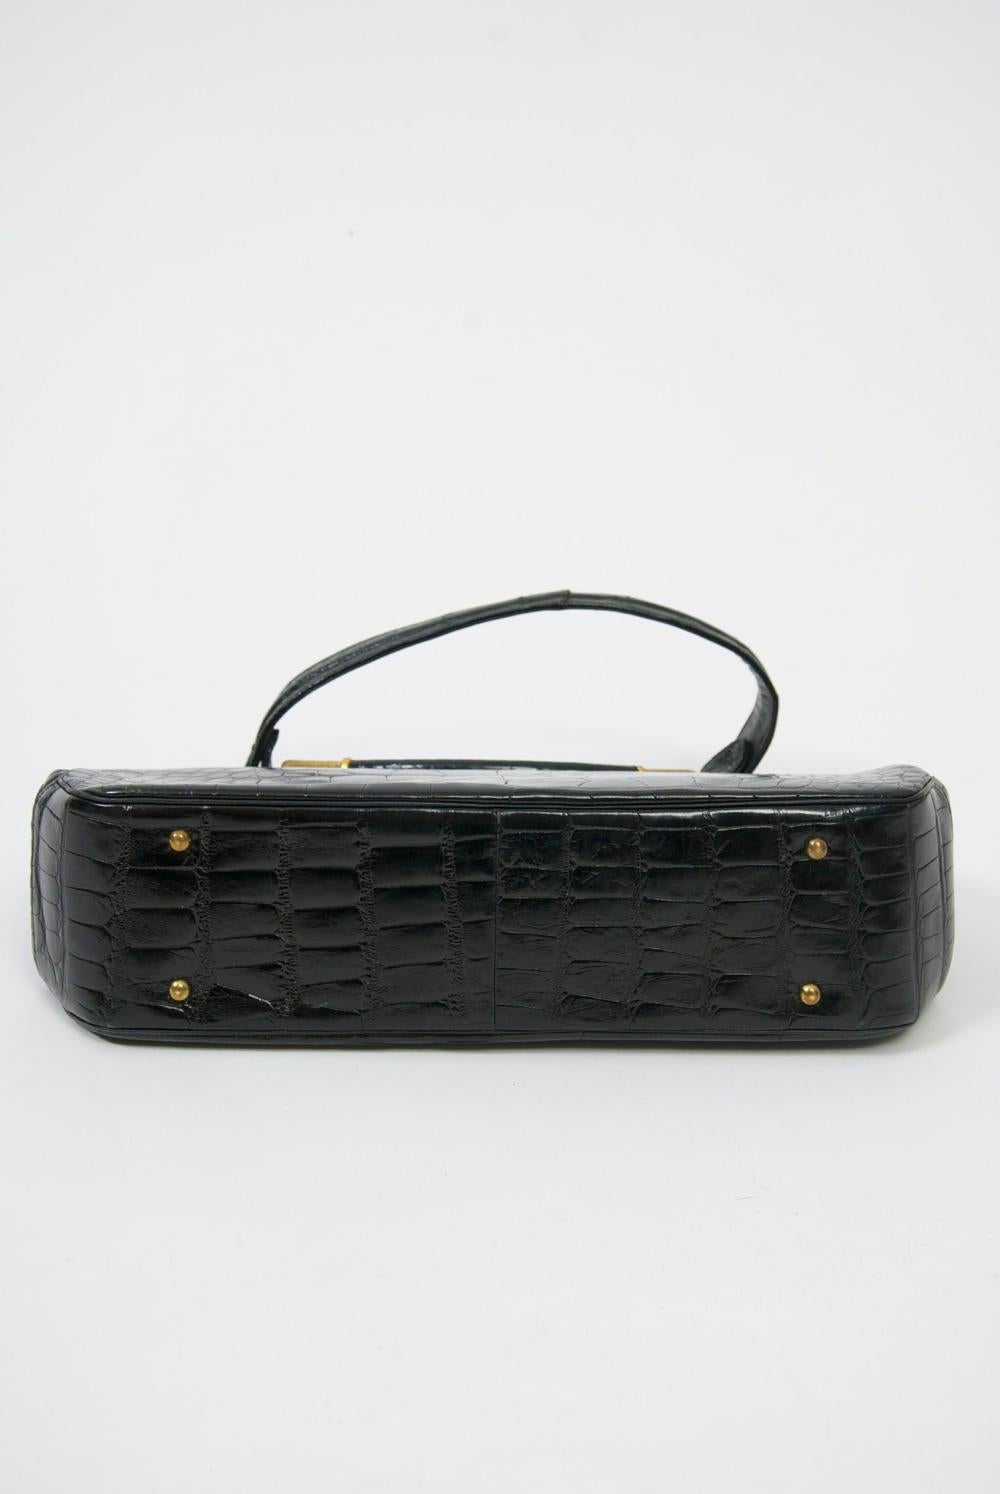 Rosenfeld 1960s Black Faux Alligator Handbag Pour femmes en vente